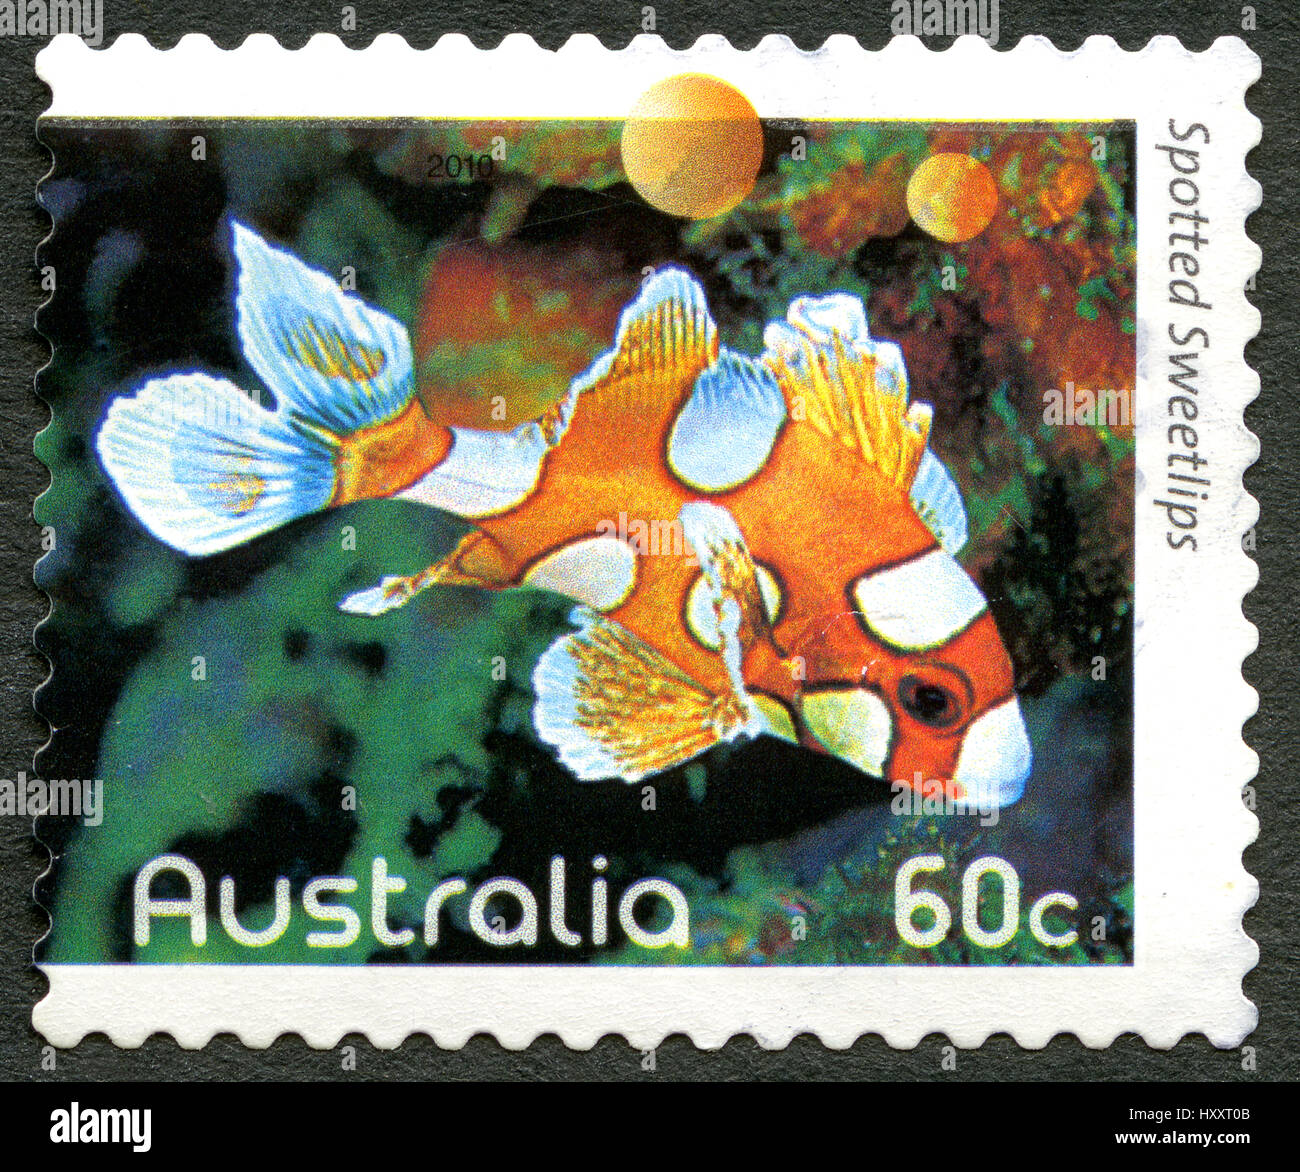 Australien - ca. 2010: Eine gebrauchte Briefmarke aus Australien, ein Bild eines Fisches entdeckt Süßlippen, ca. 2010. Stockfoto